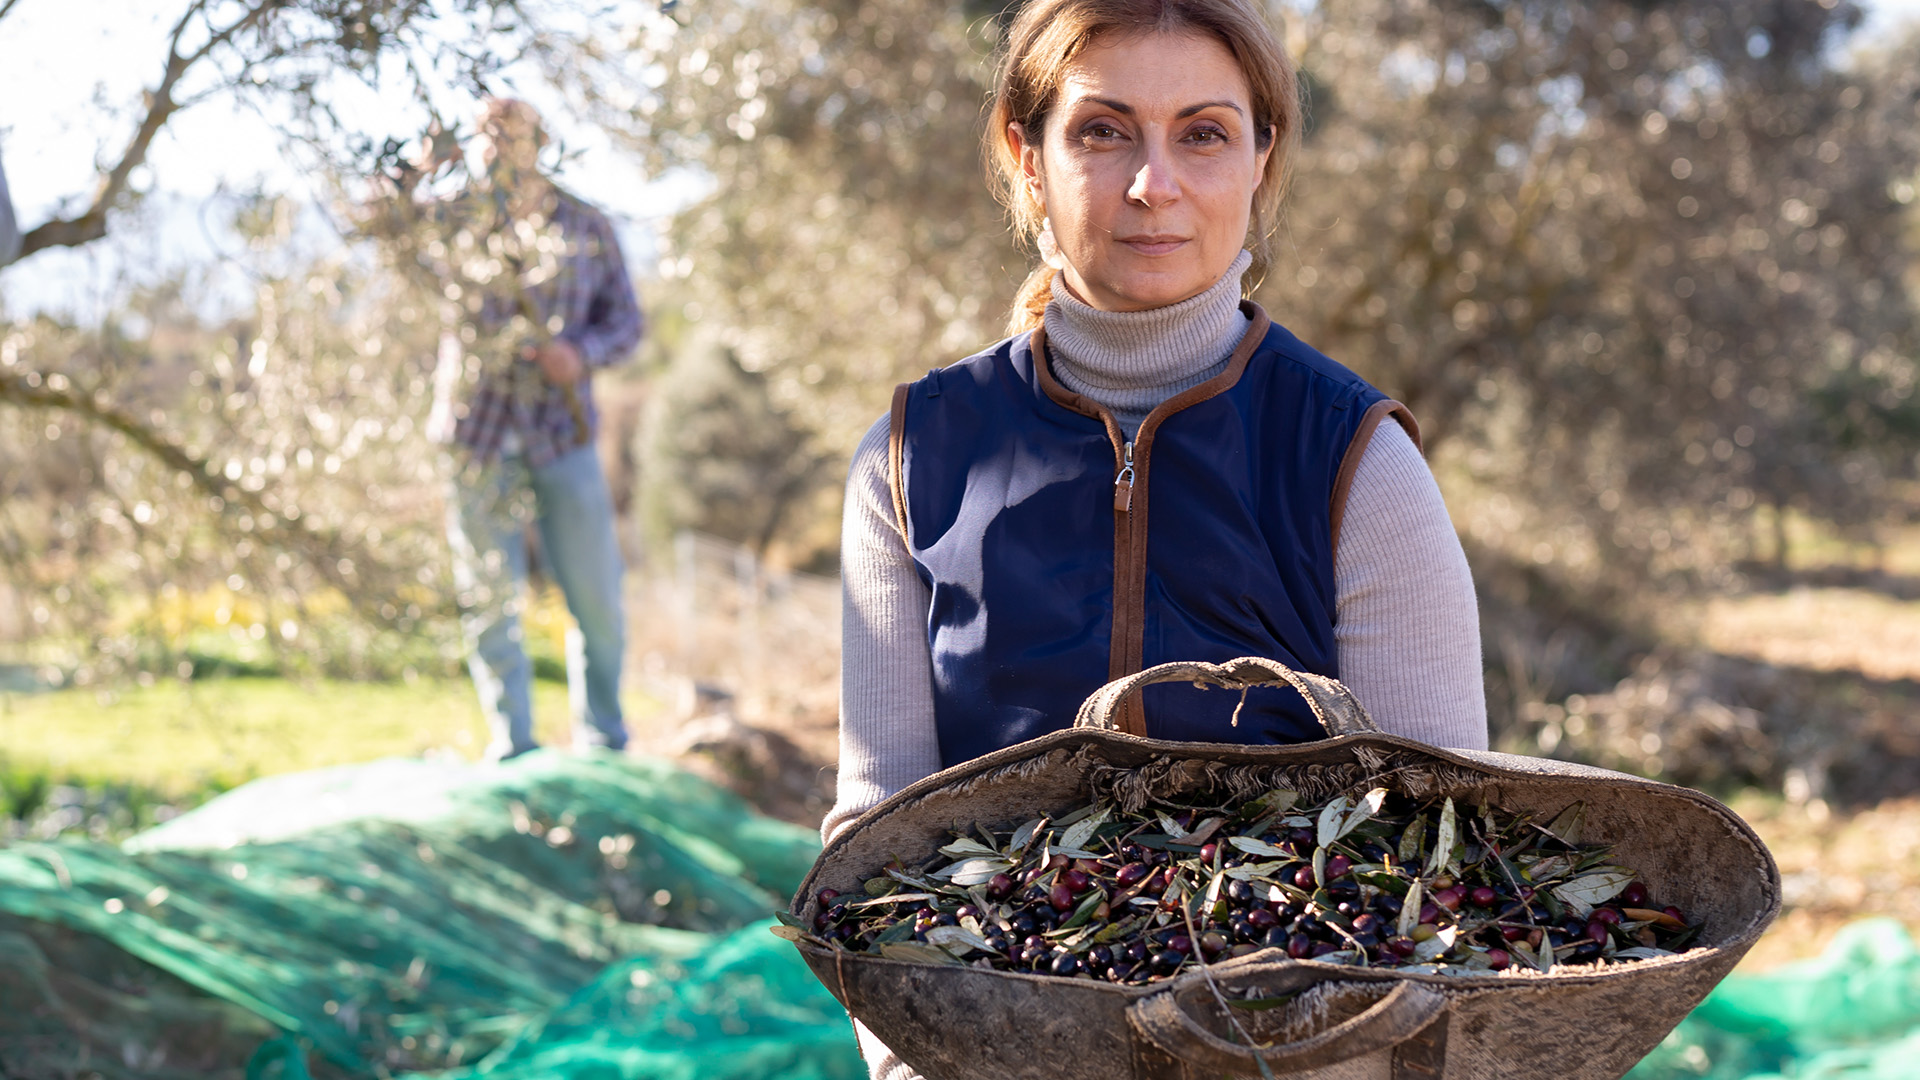 raccolta manuale di olive in calabria per produzione olio evo